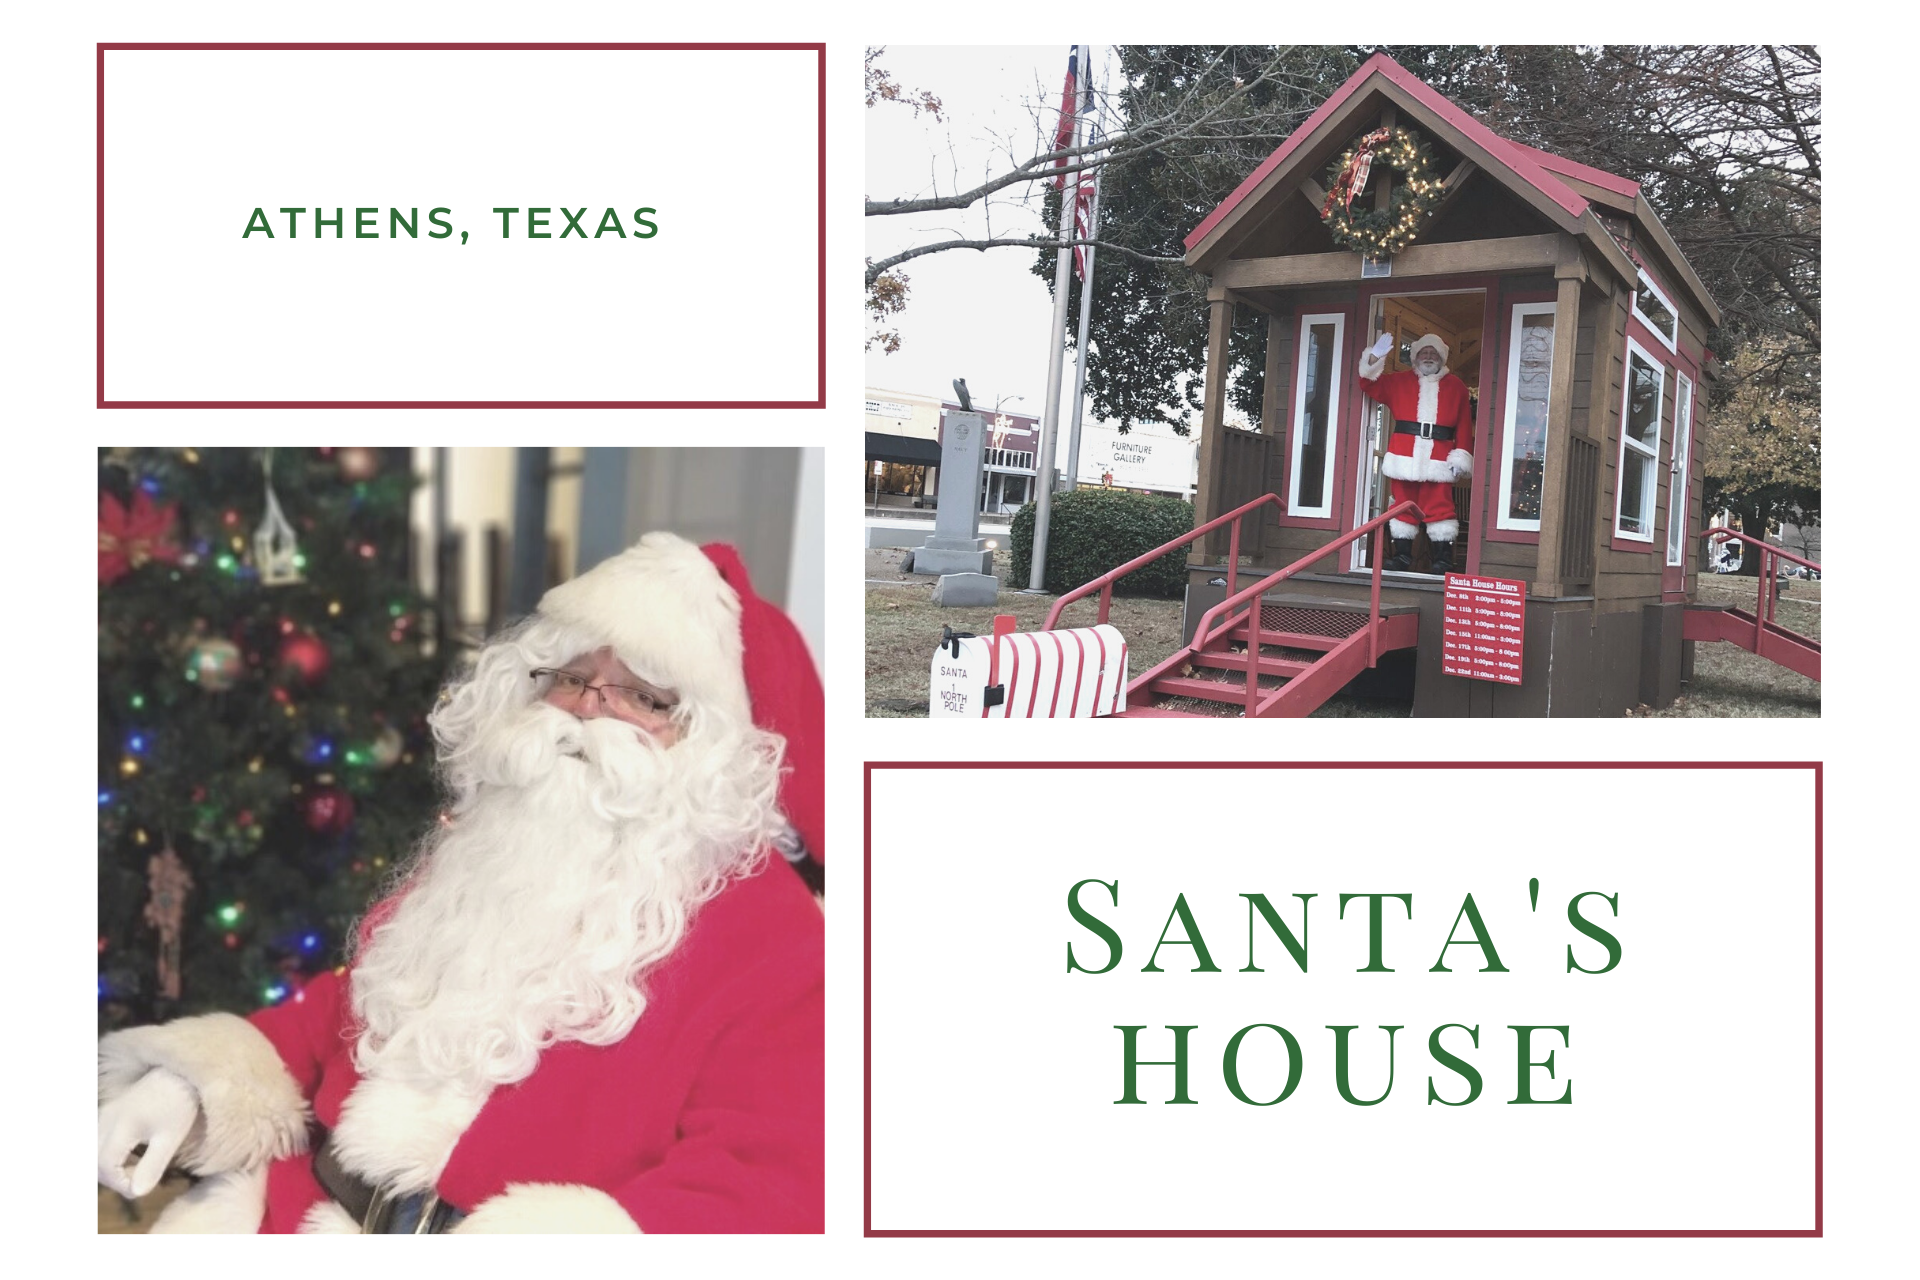 Santa's House is Open